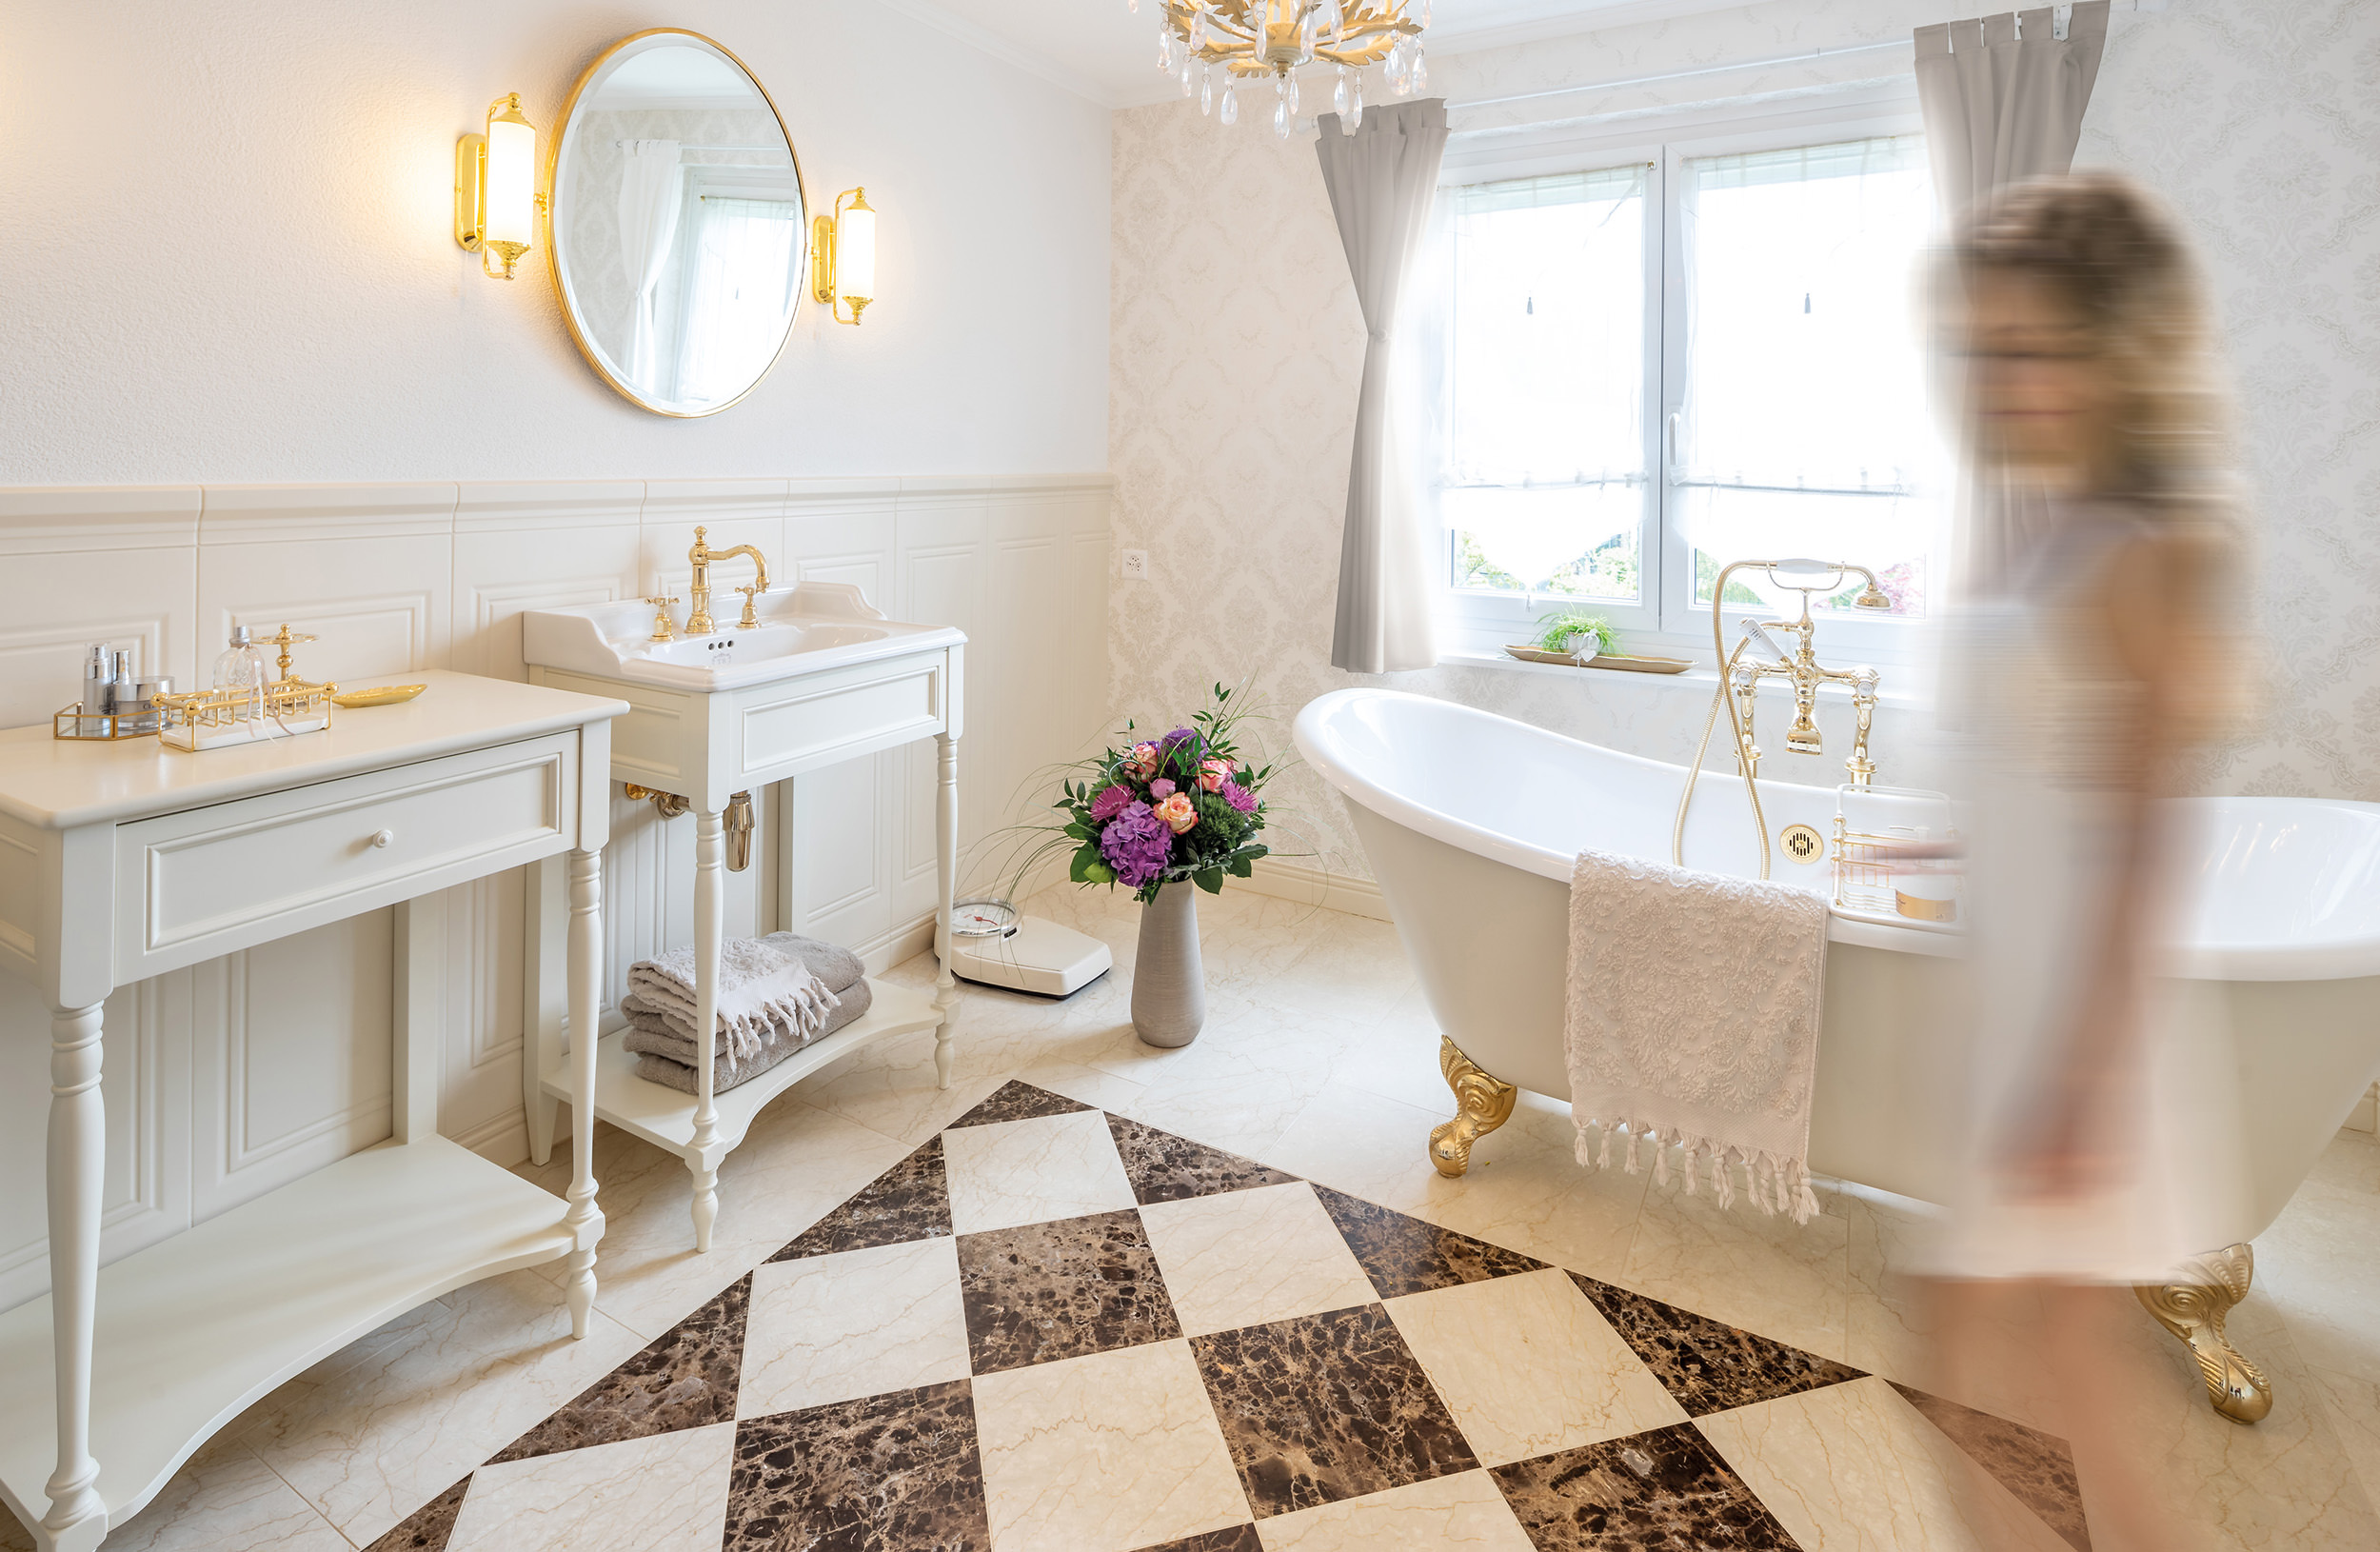 Vintage Badezimmer individuell gestaltet von Traditional Bathrooms. Stilecht, hochwertig und persönlich bis ins kleinste Detail. 